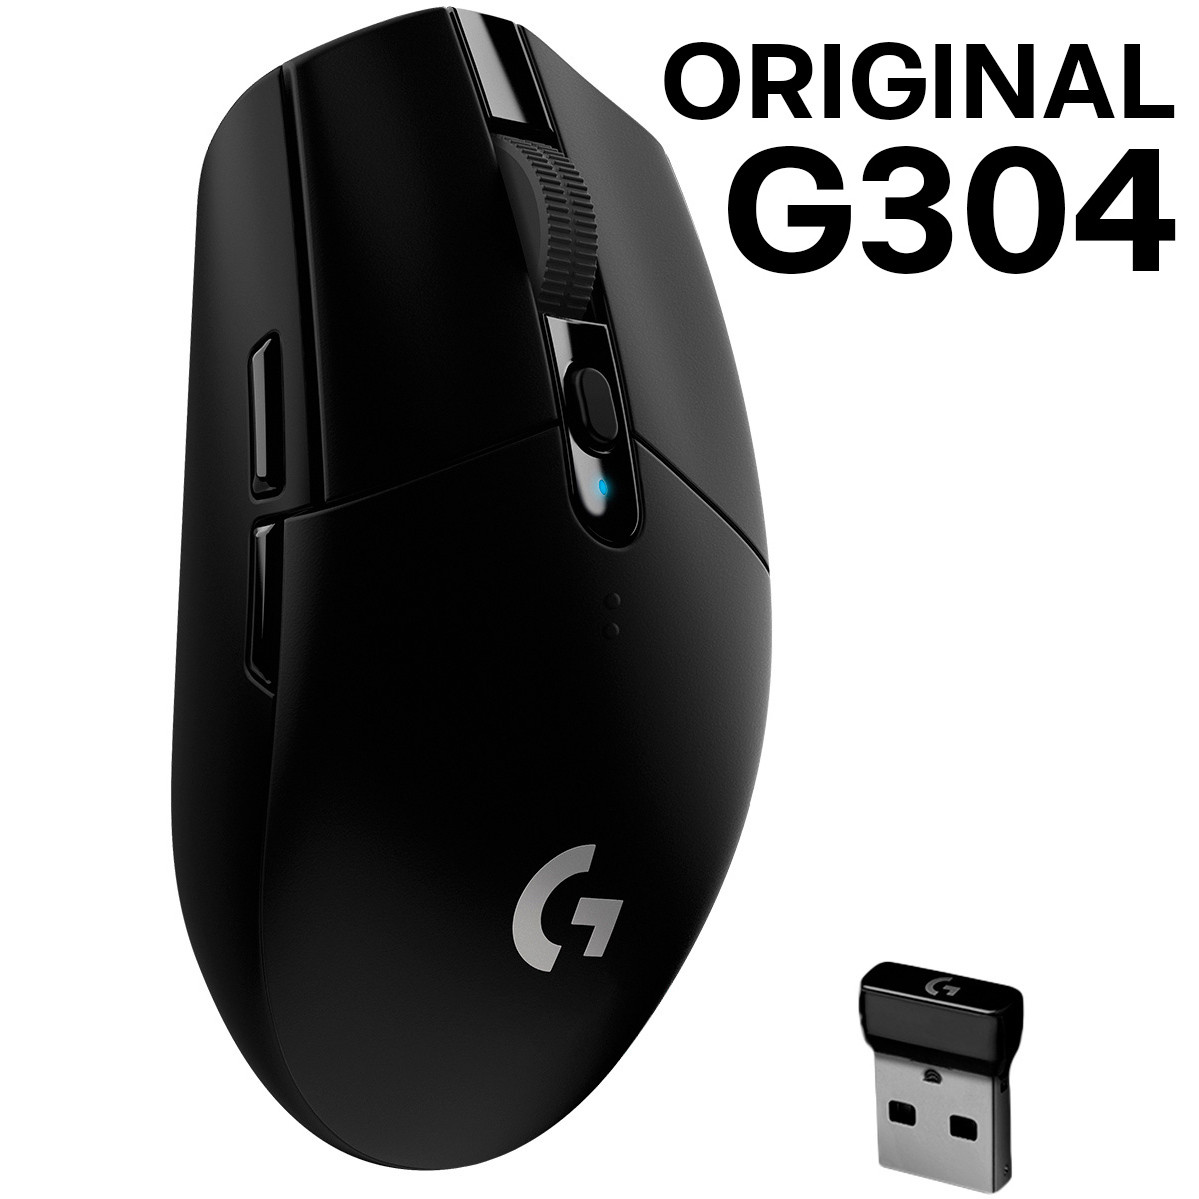 ОРИГІНАЛ Logitech G304 Wireless Black (910-005286) азійська версія G305 (910-005282)